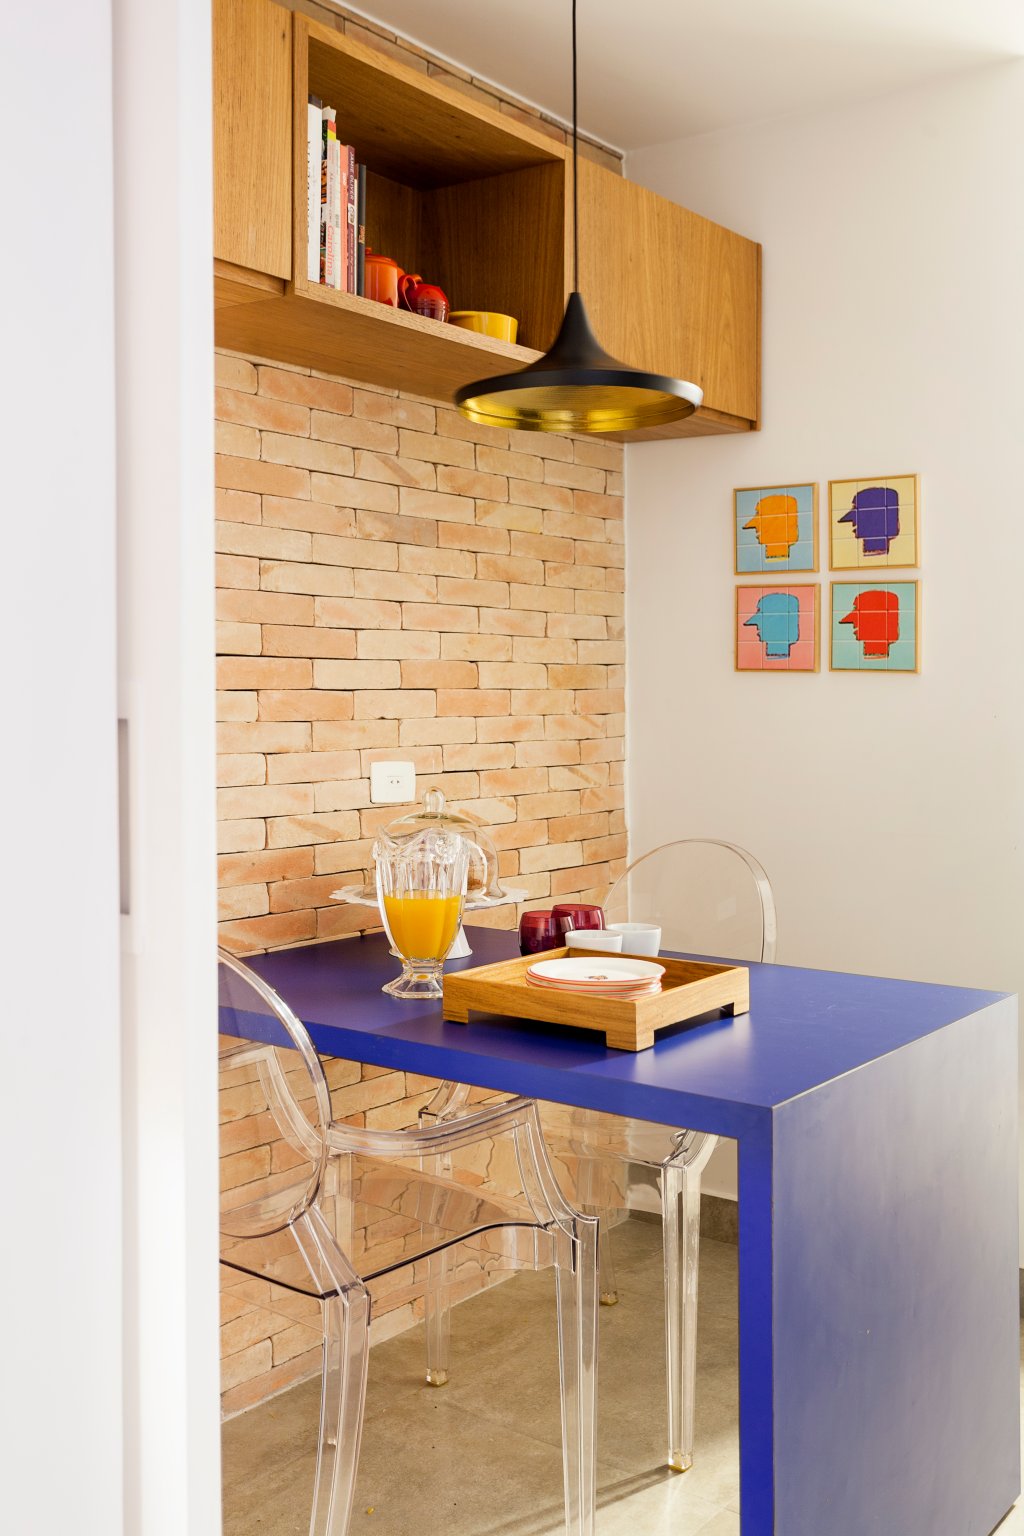 Na foto, em diagonal, é retratada uma cozinha, com mesa azul e cadeiras transparente. A parede ao fundo é de tijolos aparentes. Há um quadro colorido na paredes. O pendente preto e dourado aparece sobre a mesa, que tem uma bandeja de madeira e jarra de vidro com suco de laranja.